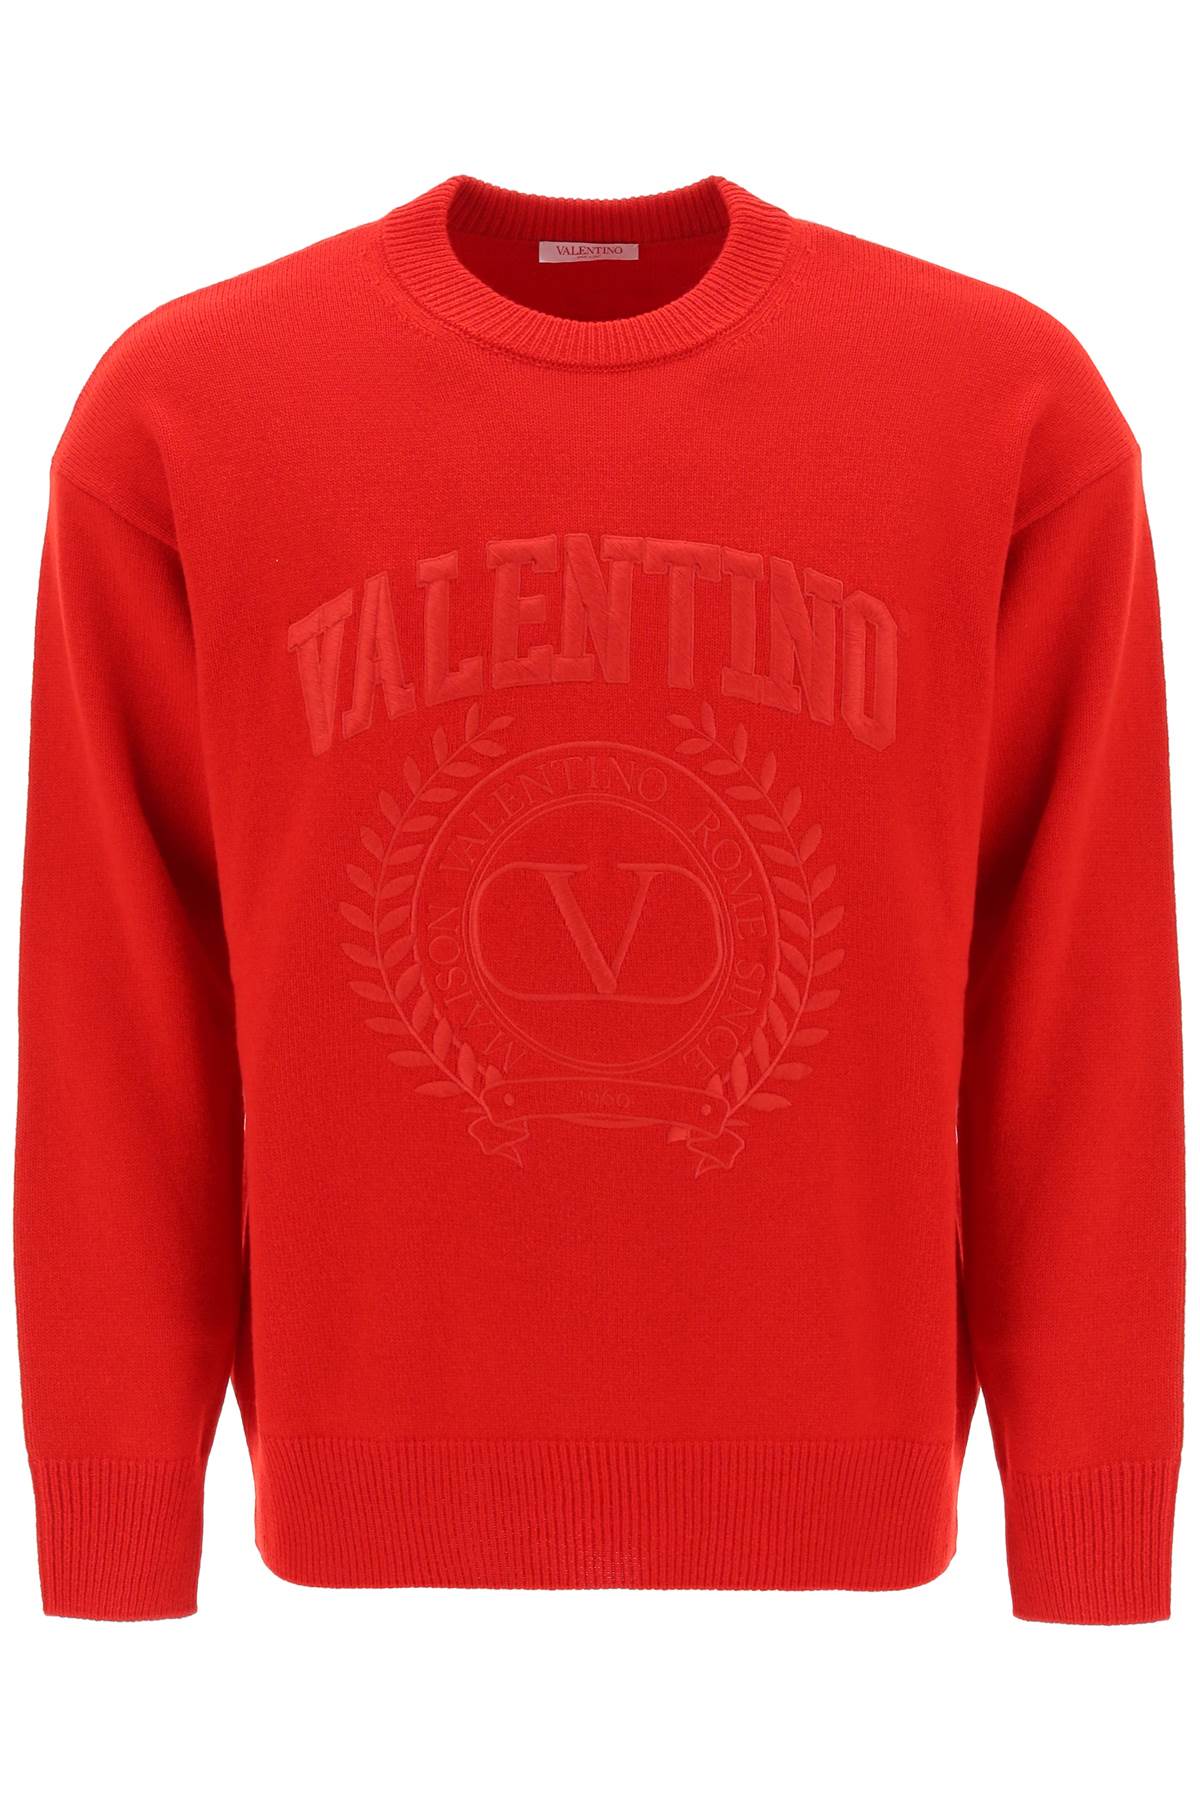 Áo len nam màu đỏ Valentino with các chi tiết thêu trên ngực